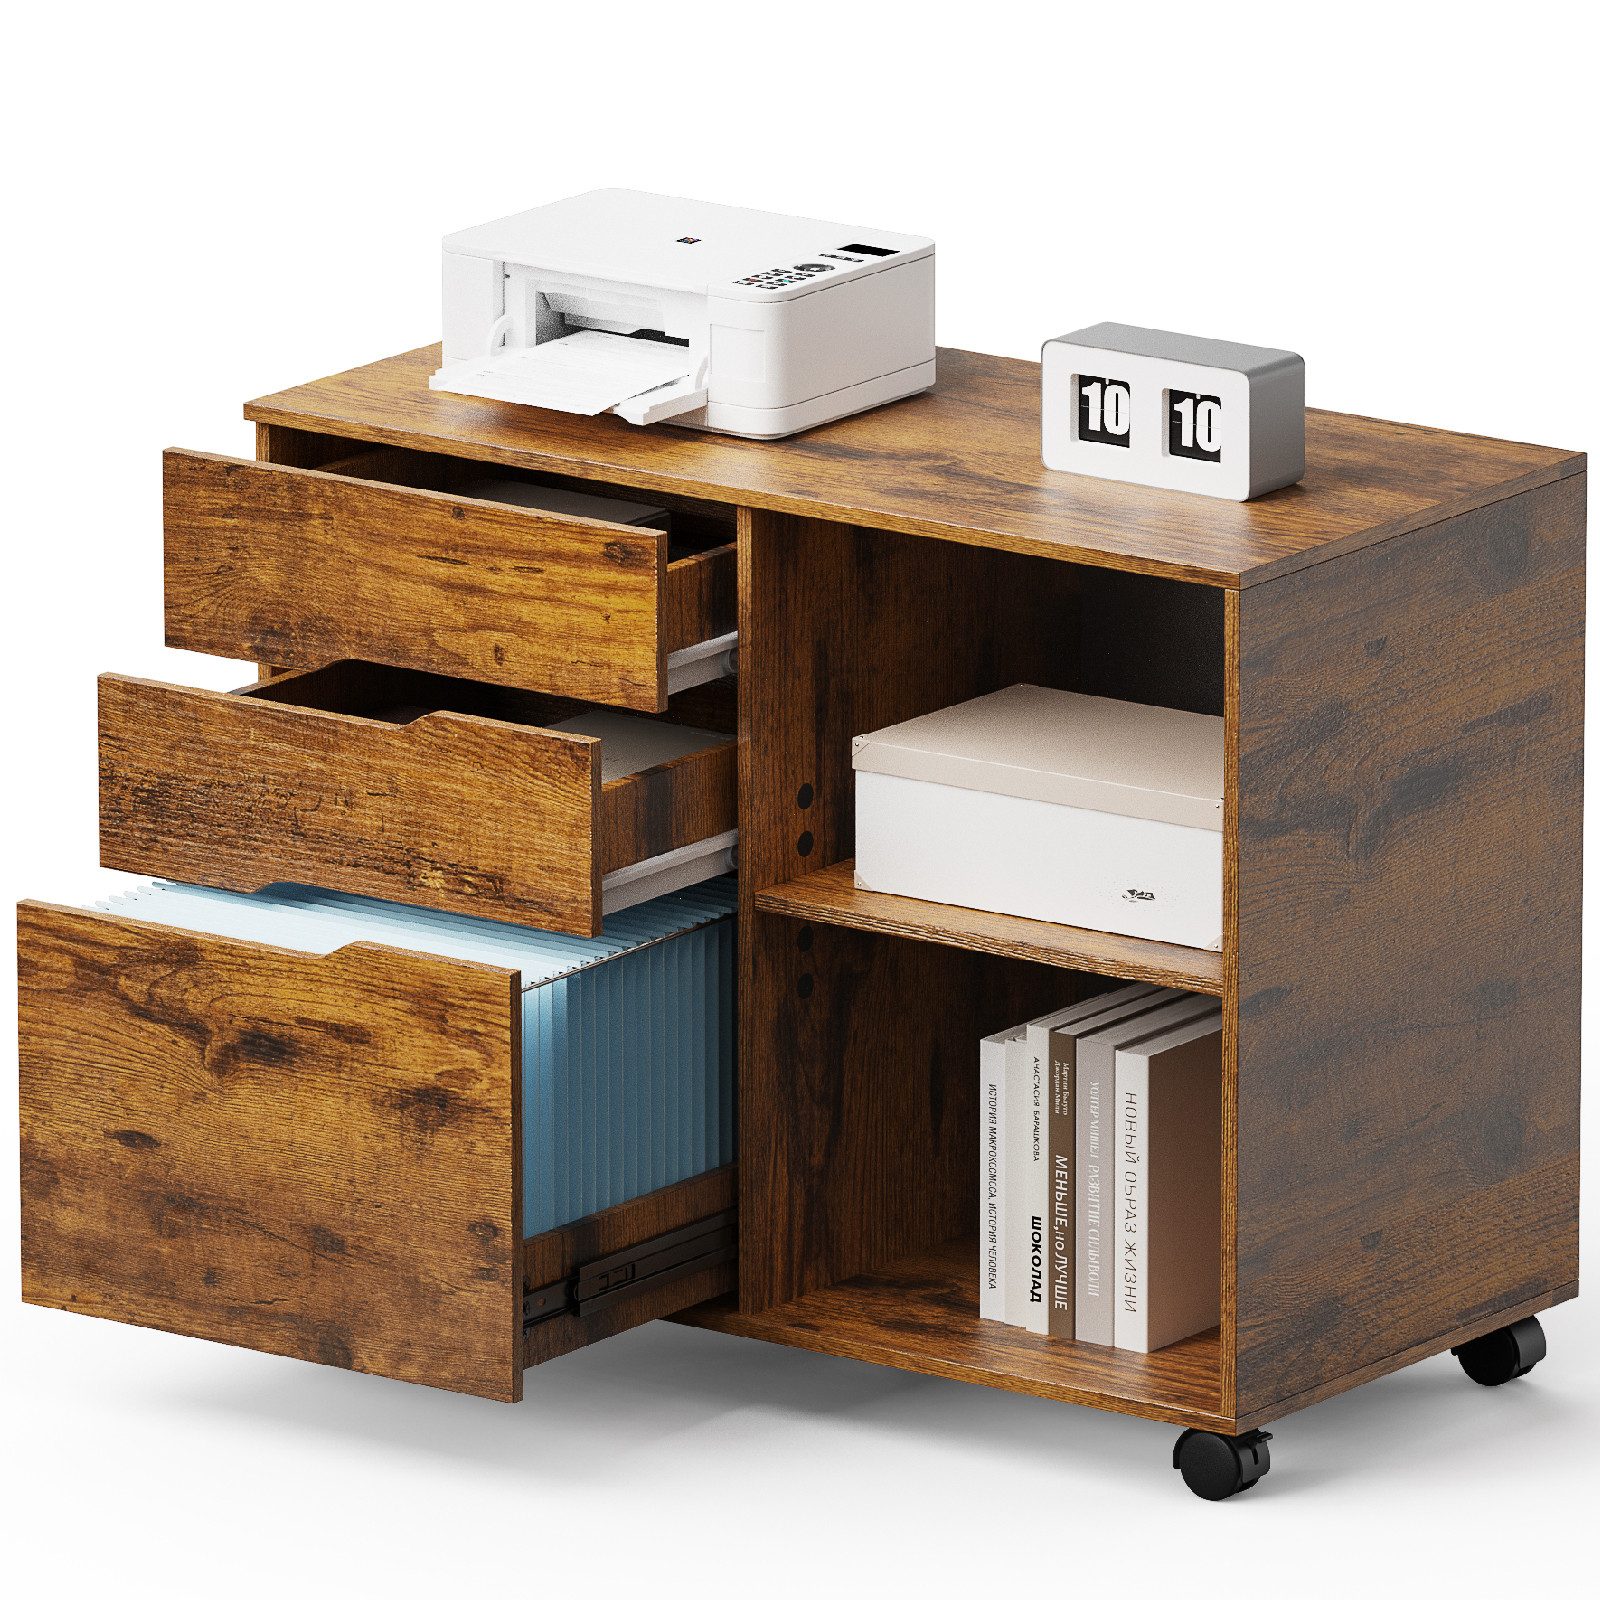 JOEAIS Rollcontainer Schreibtisch Büromöbel Druckerschrank Büro Schrank, Schreibtisch Schrank auf Rollen Rollschrank Kommode mit Rollen